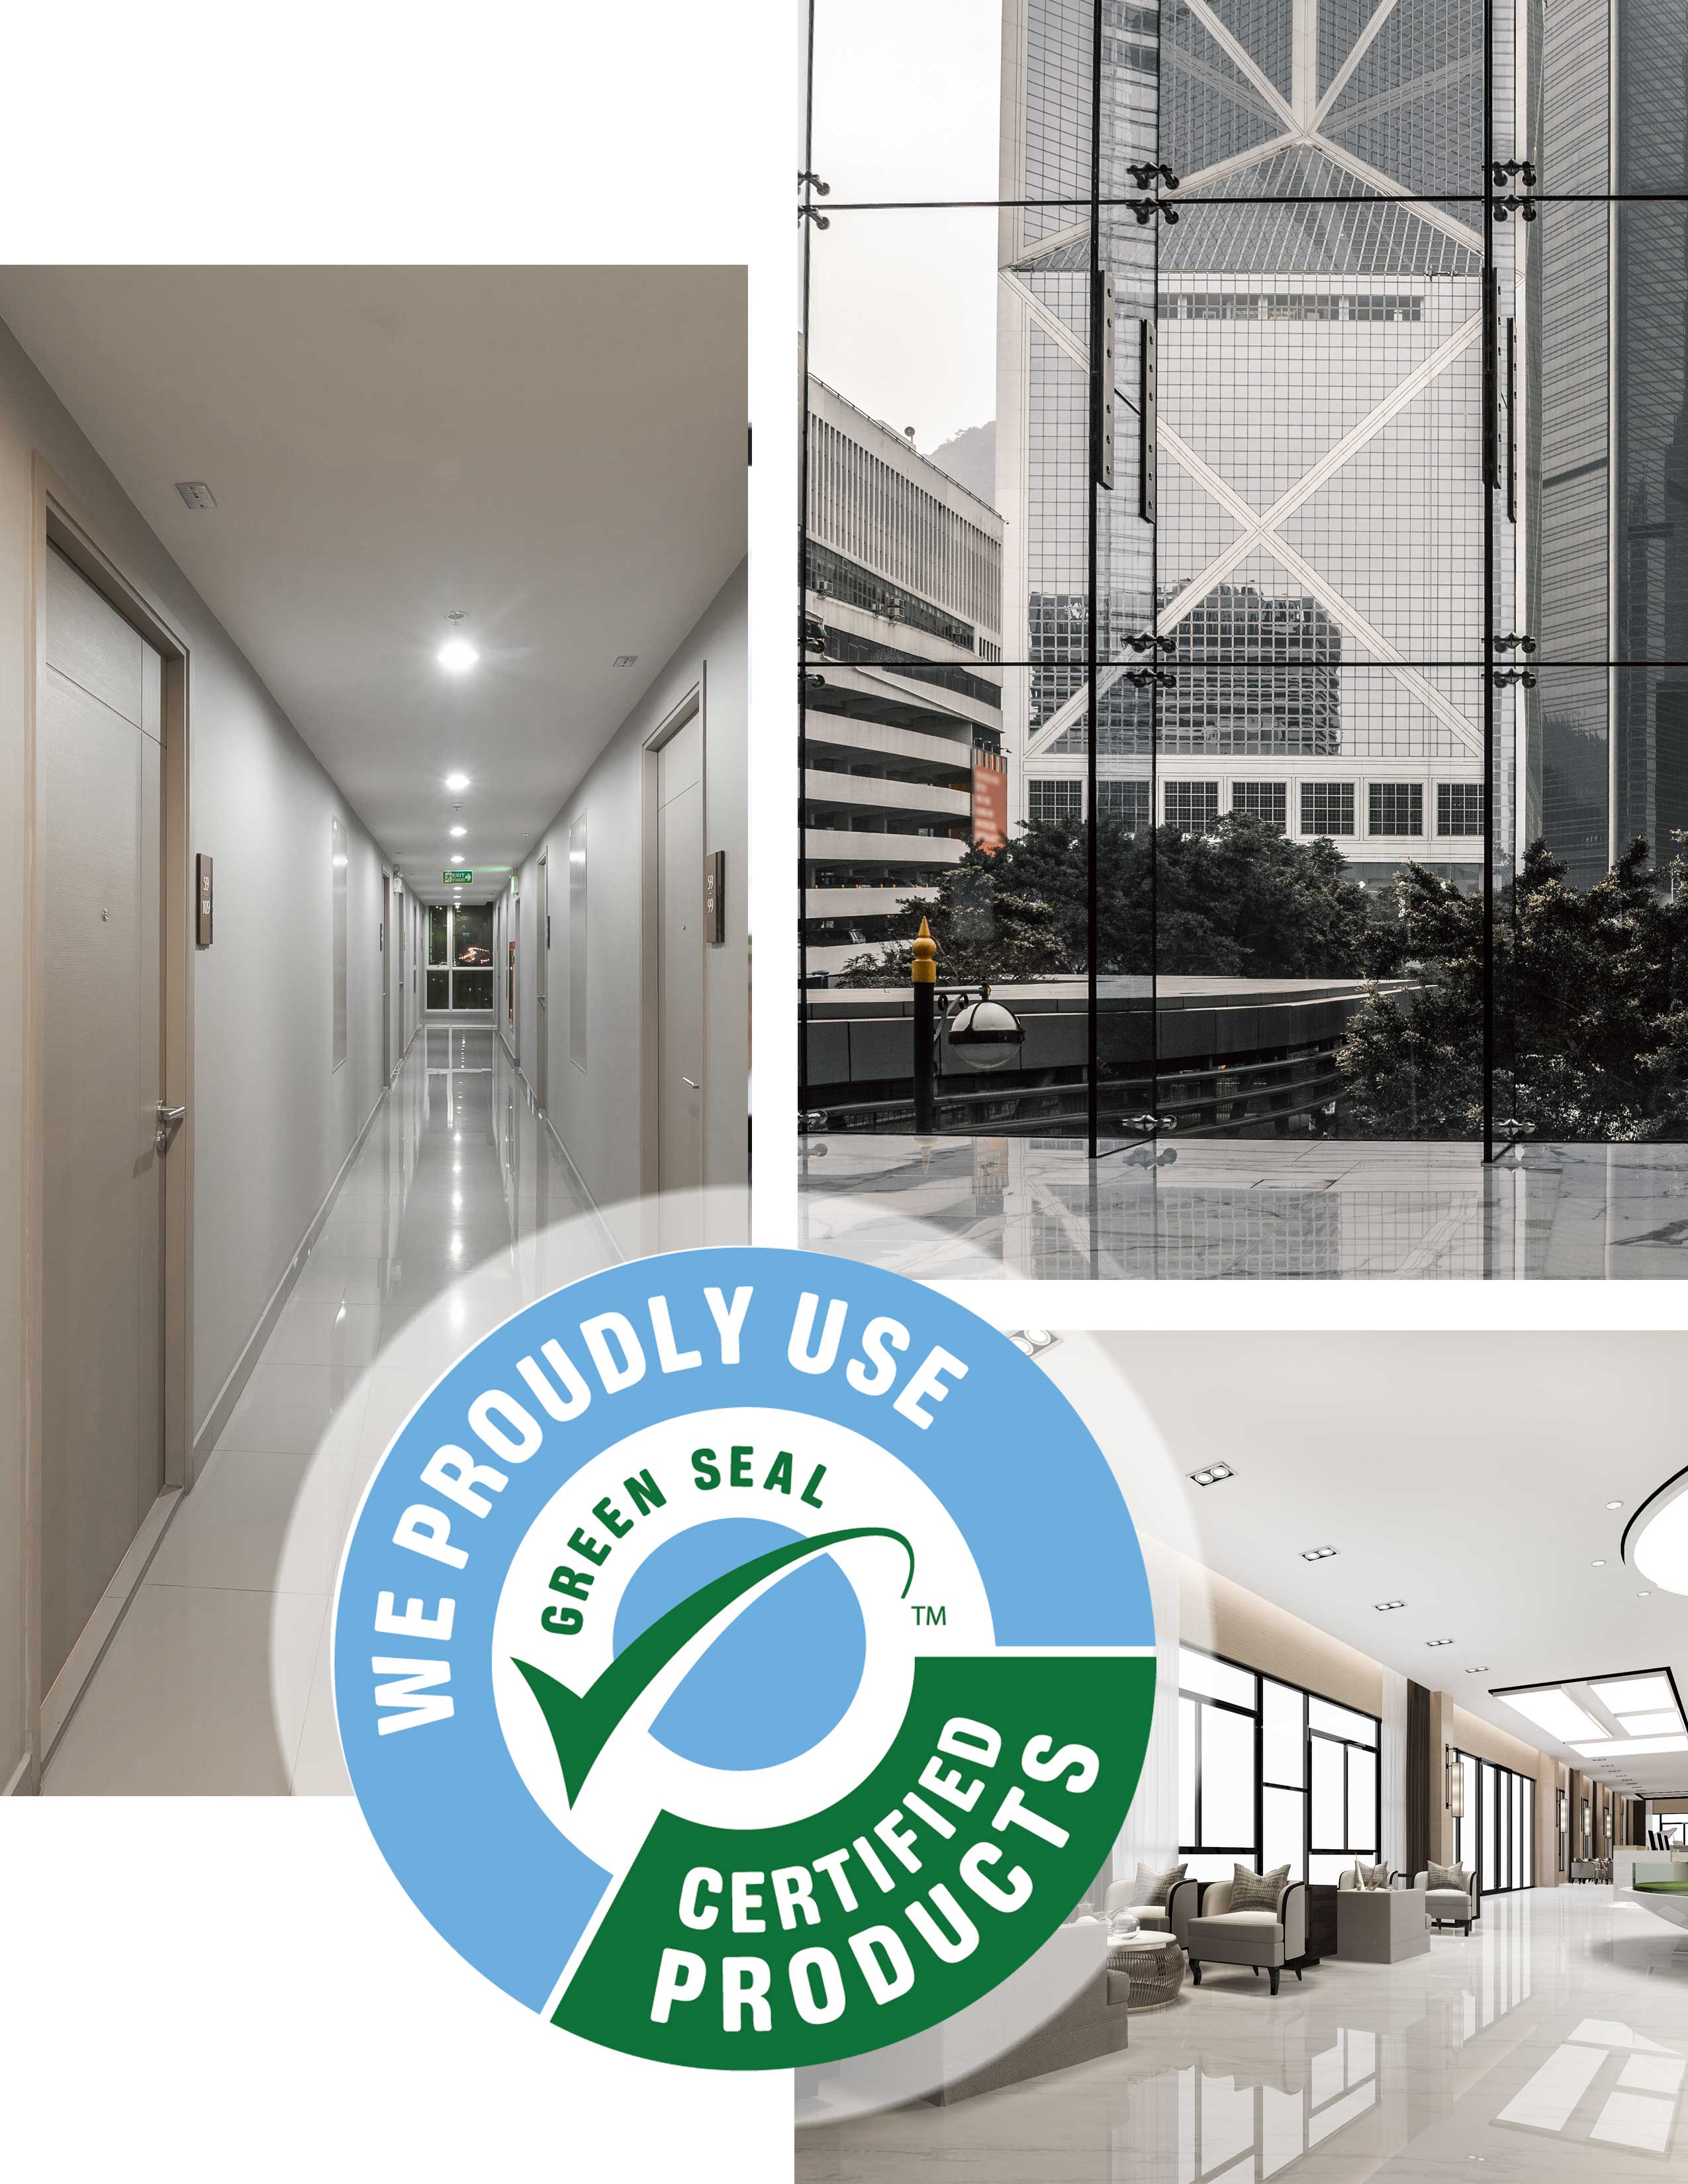 Clean buildings, hallways and lobby areas